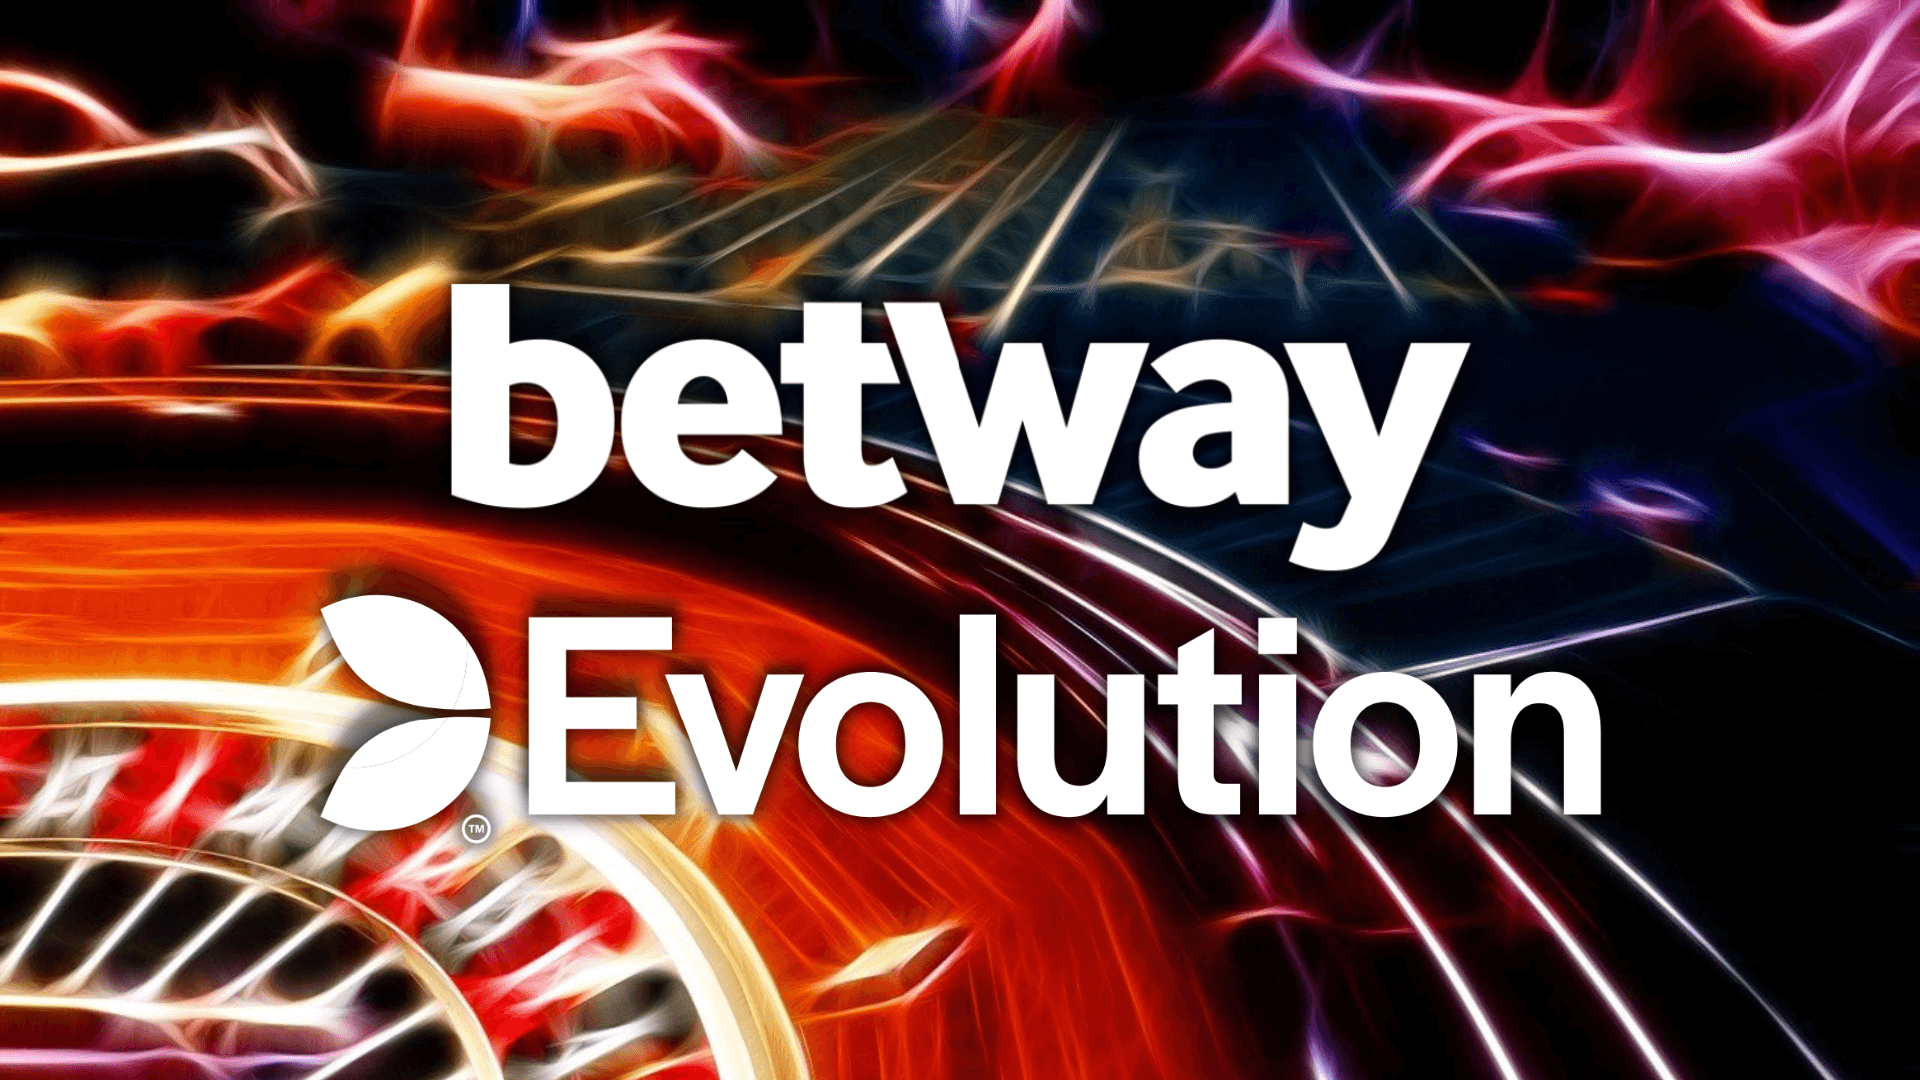 Betway alza la posta nel casinò live: arrivano i tavoli e i game show di Evolution